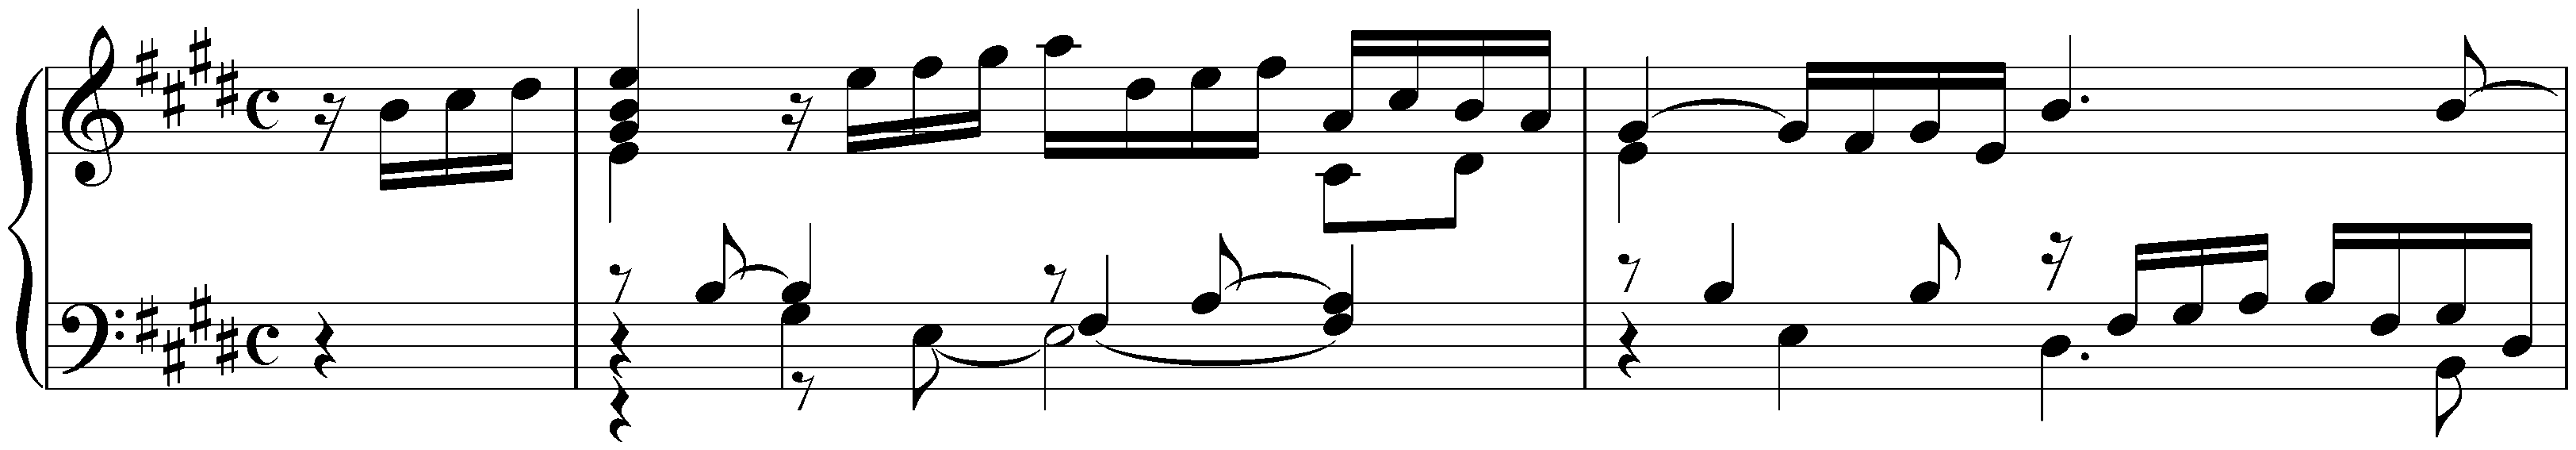 Suite in E major, HWV 430; 2. Allemande (first version)